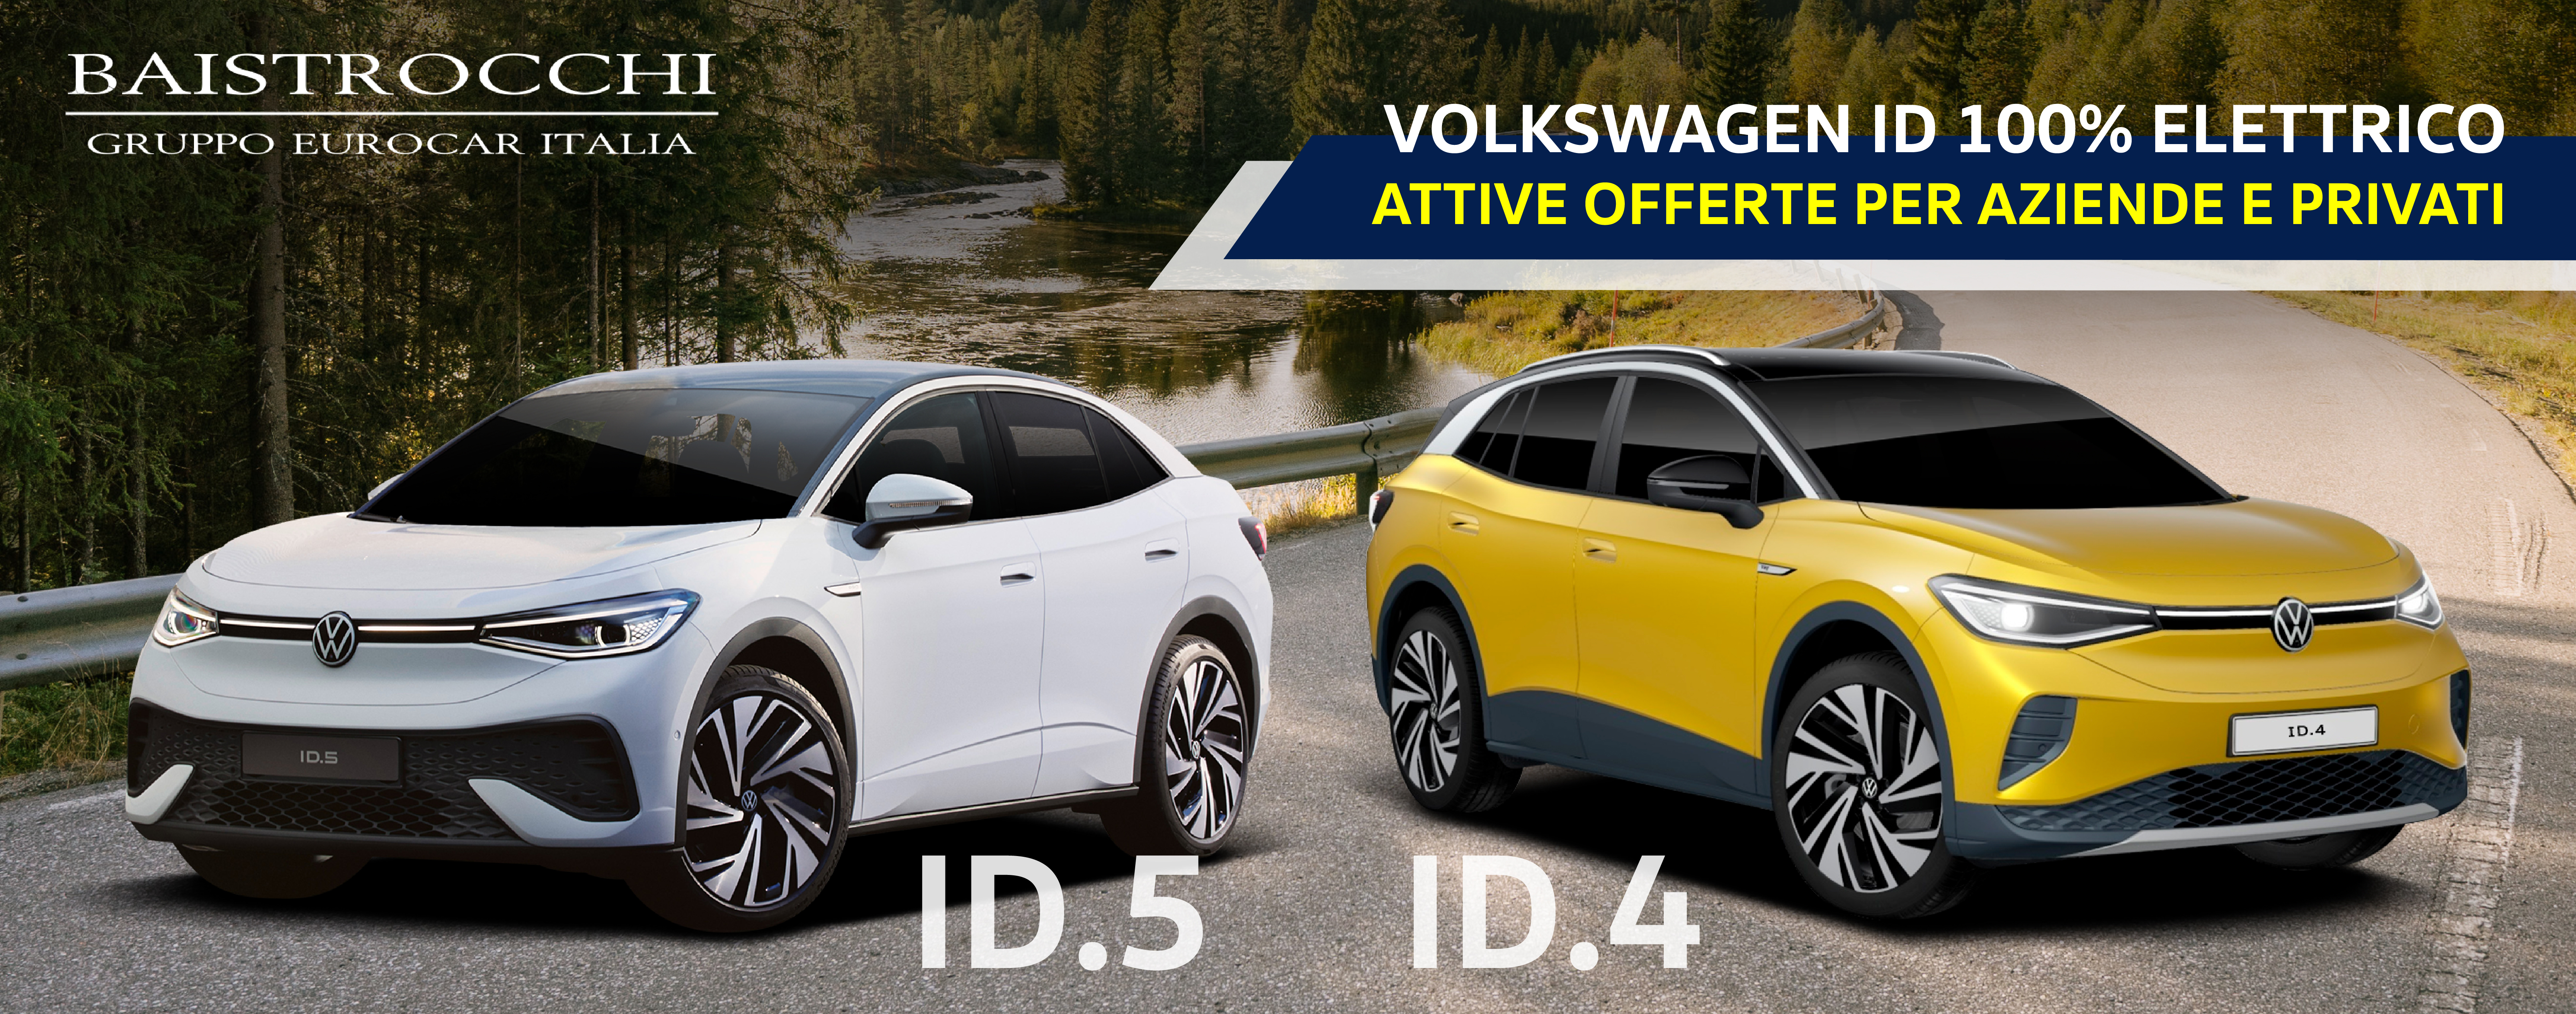 Offerte per Volkswagen ID dedicate a privati e aziende 